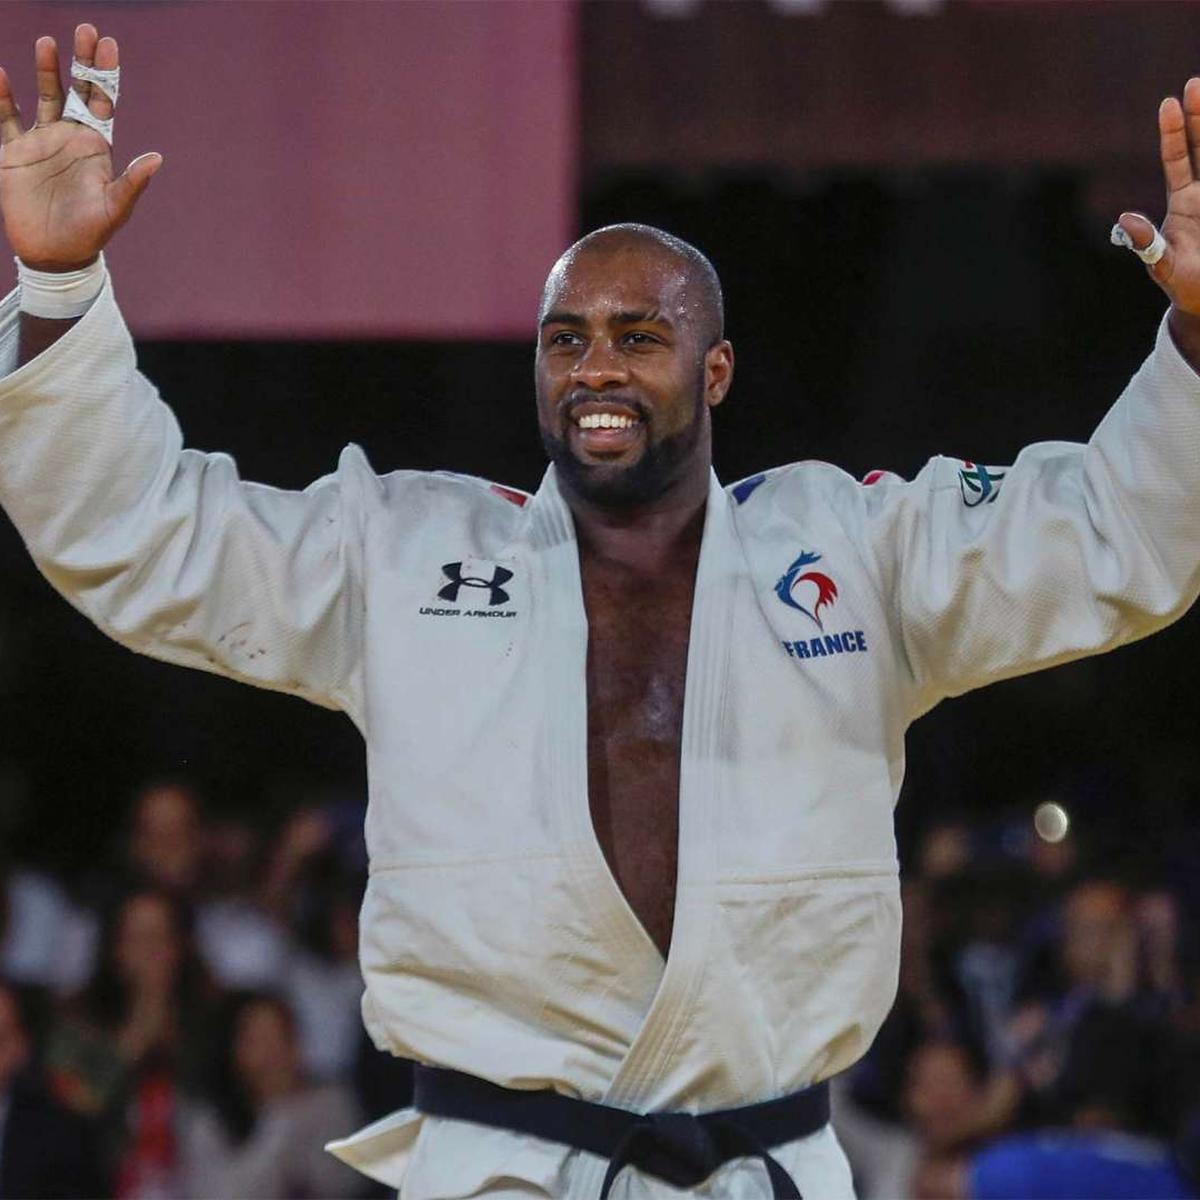 Teddy Riner: biografía, títulos y historia del judoca busca su tercera medalla oro consecutiva y se mantuvo invicto durante 10 años | Judo | Juegos Olímpicos Tokio 2020